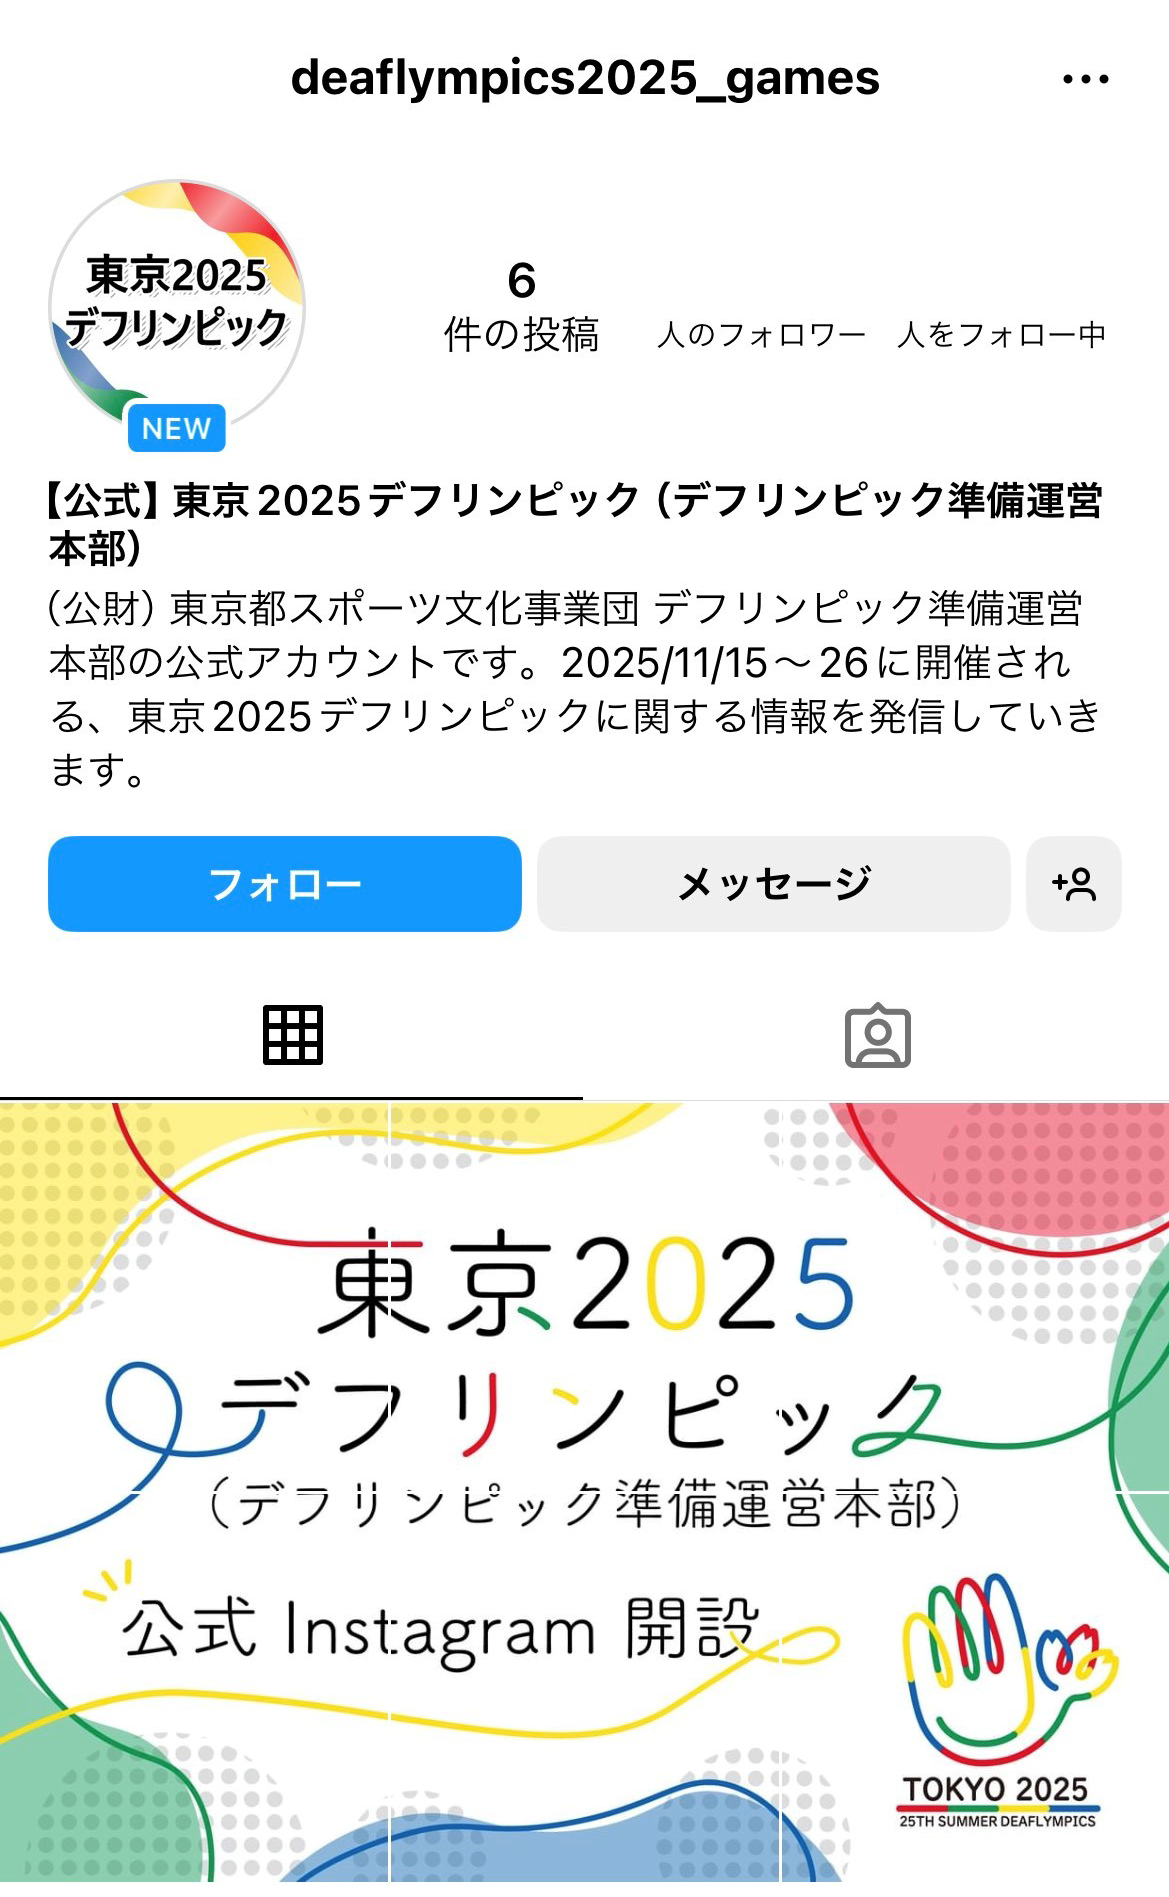 【公式】東京2025デフリンピック（デフリンピック準備運営本部）Instagram（@deaflympics2025_games）